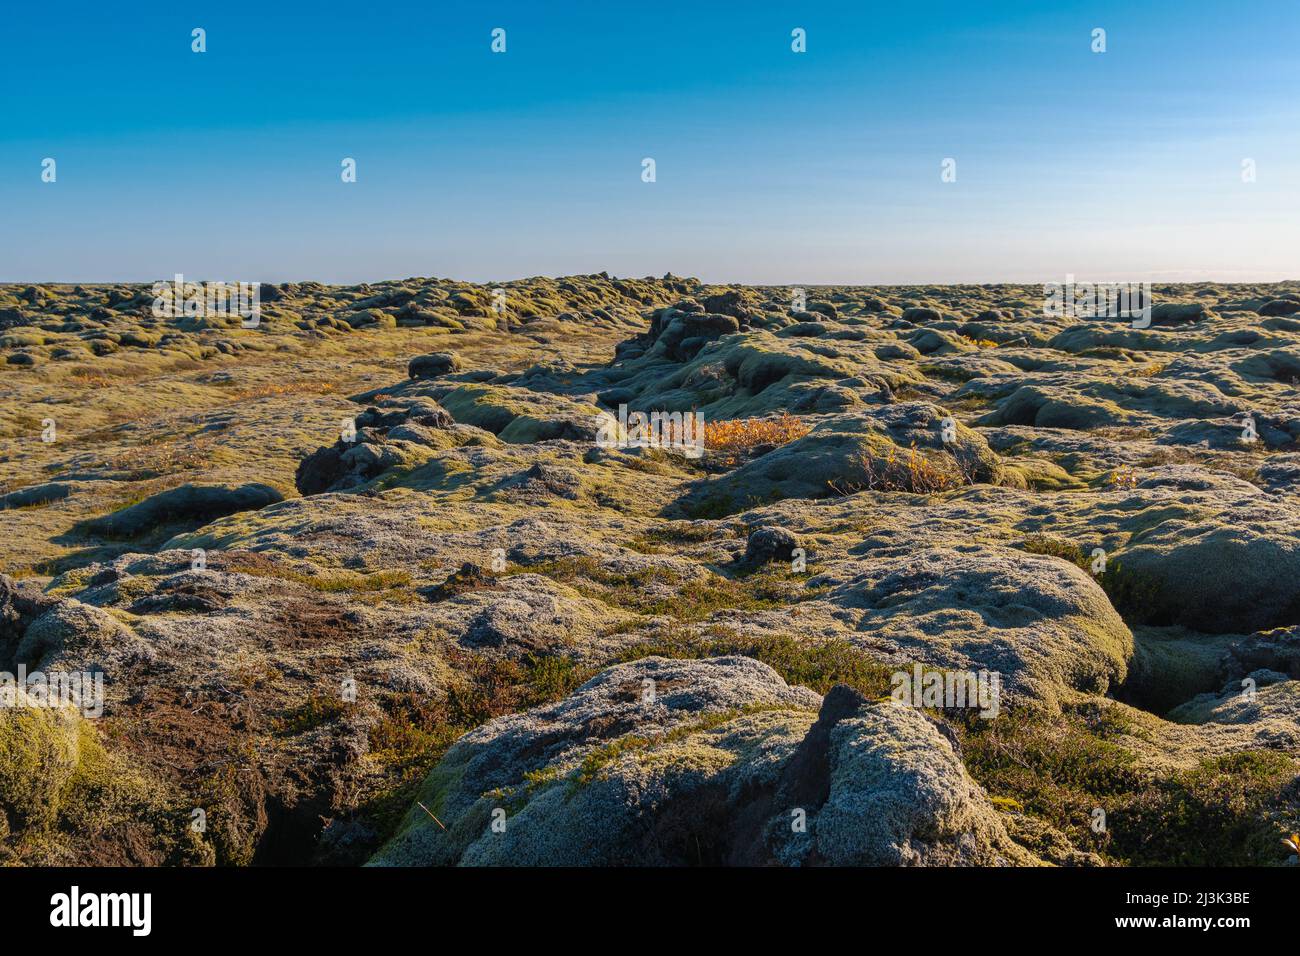 Laut den isländischen Legenden leben die verborgenen Menschen in diesen Steinen, den Elfen, Trollen und Feen Foto Stock